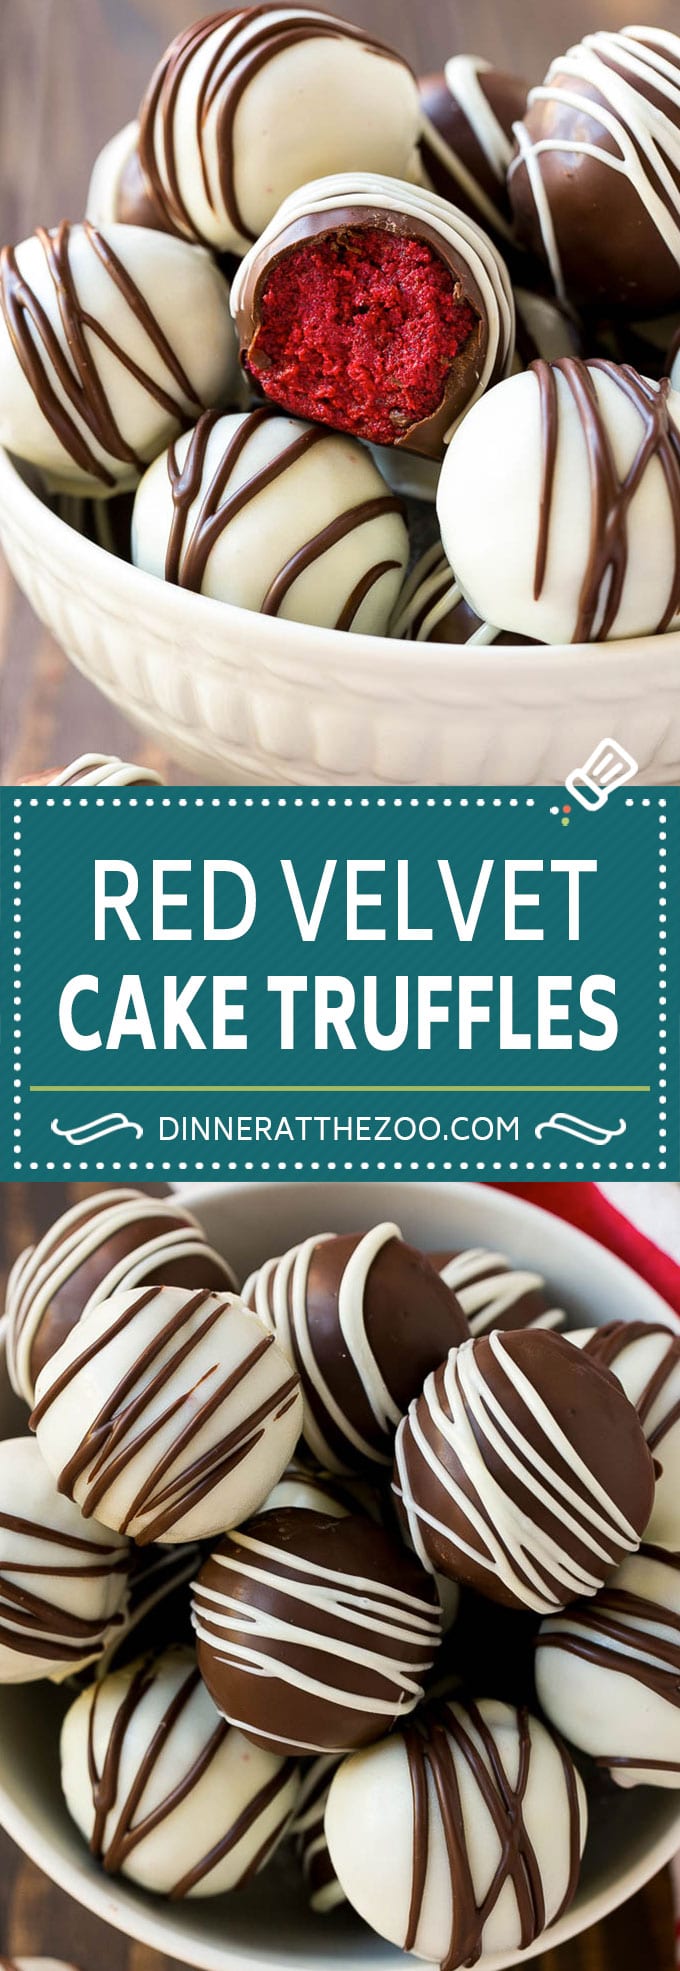 Red Velvet Cake Truffles | Valentine's Day Dessert Recipe | Red Velvet Cake Balls